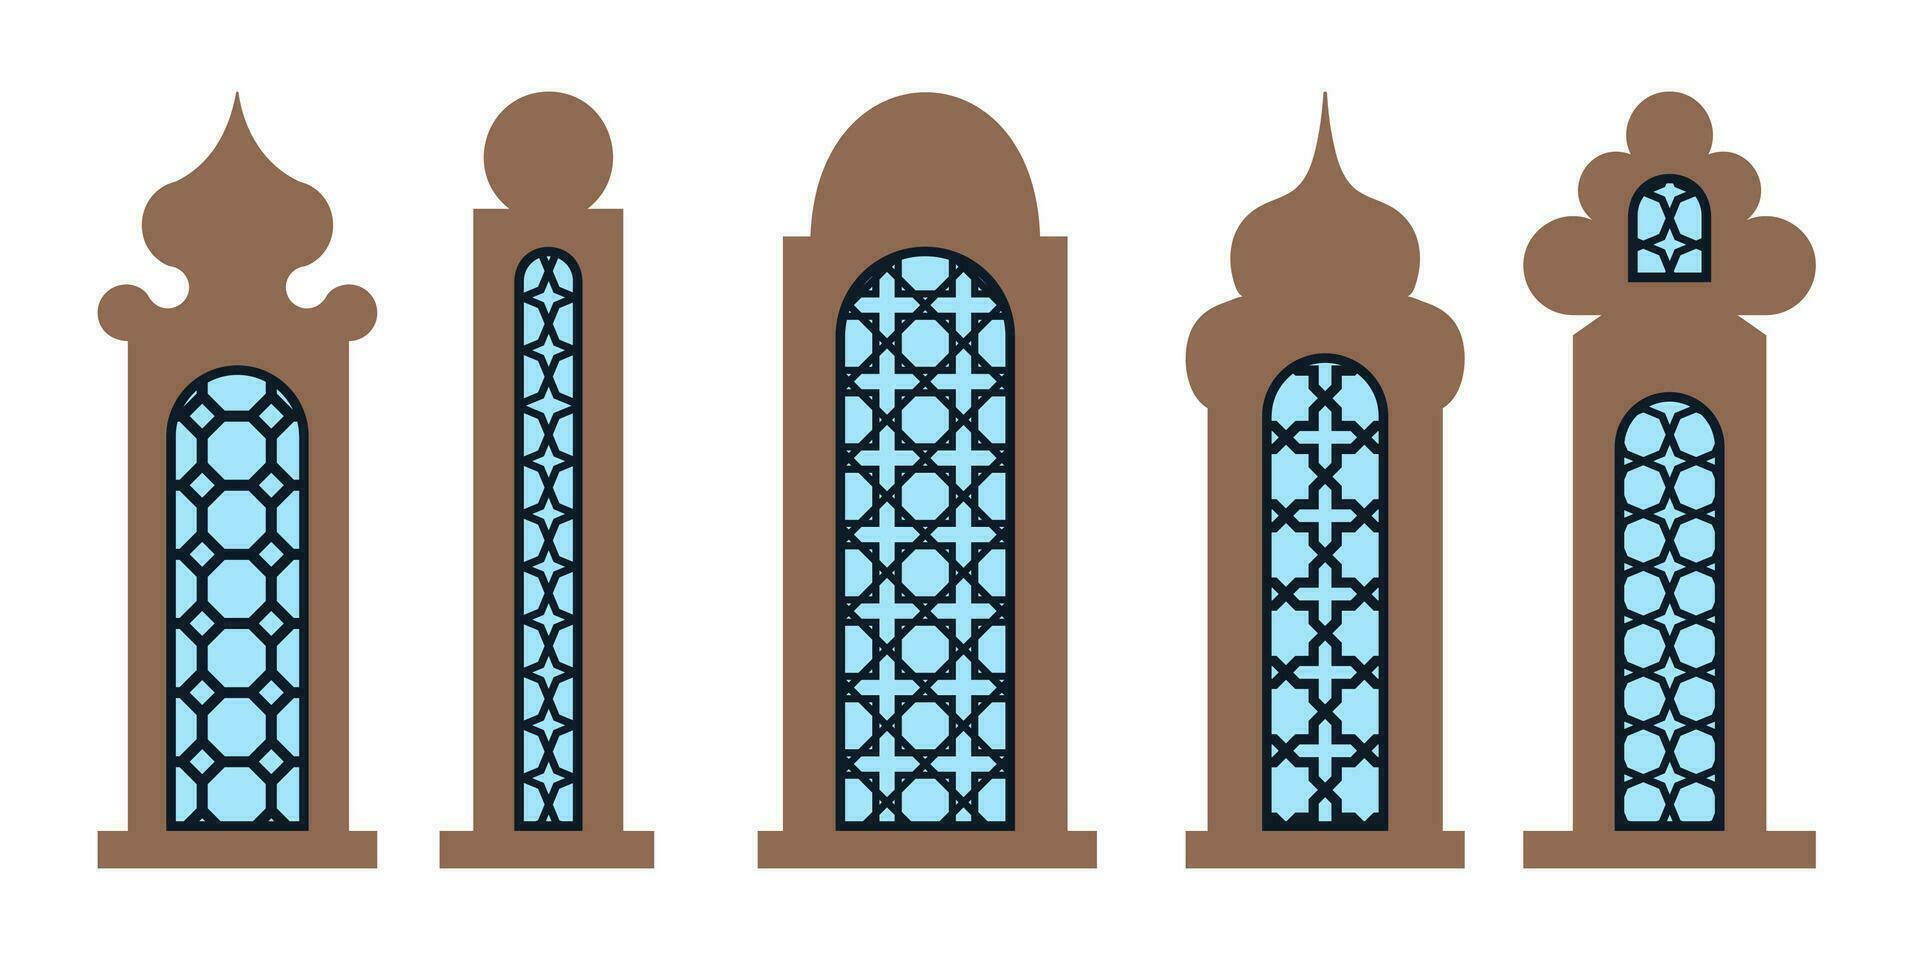 samling av arab orientalisk fönster, valv och dörrar. laser skära grill. modern design i svart fo ramar moské kupol och lyktor islamic ramadan kareem och eid mubarak stil. vektor illustration